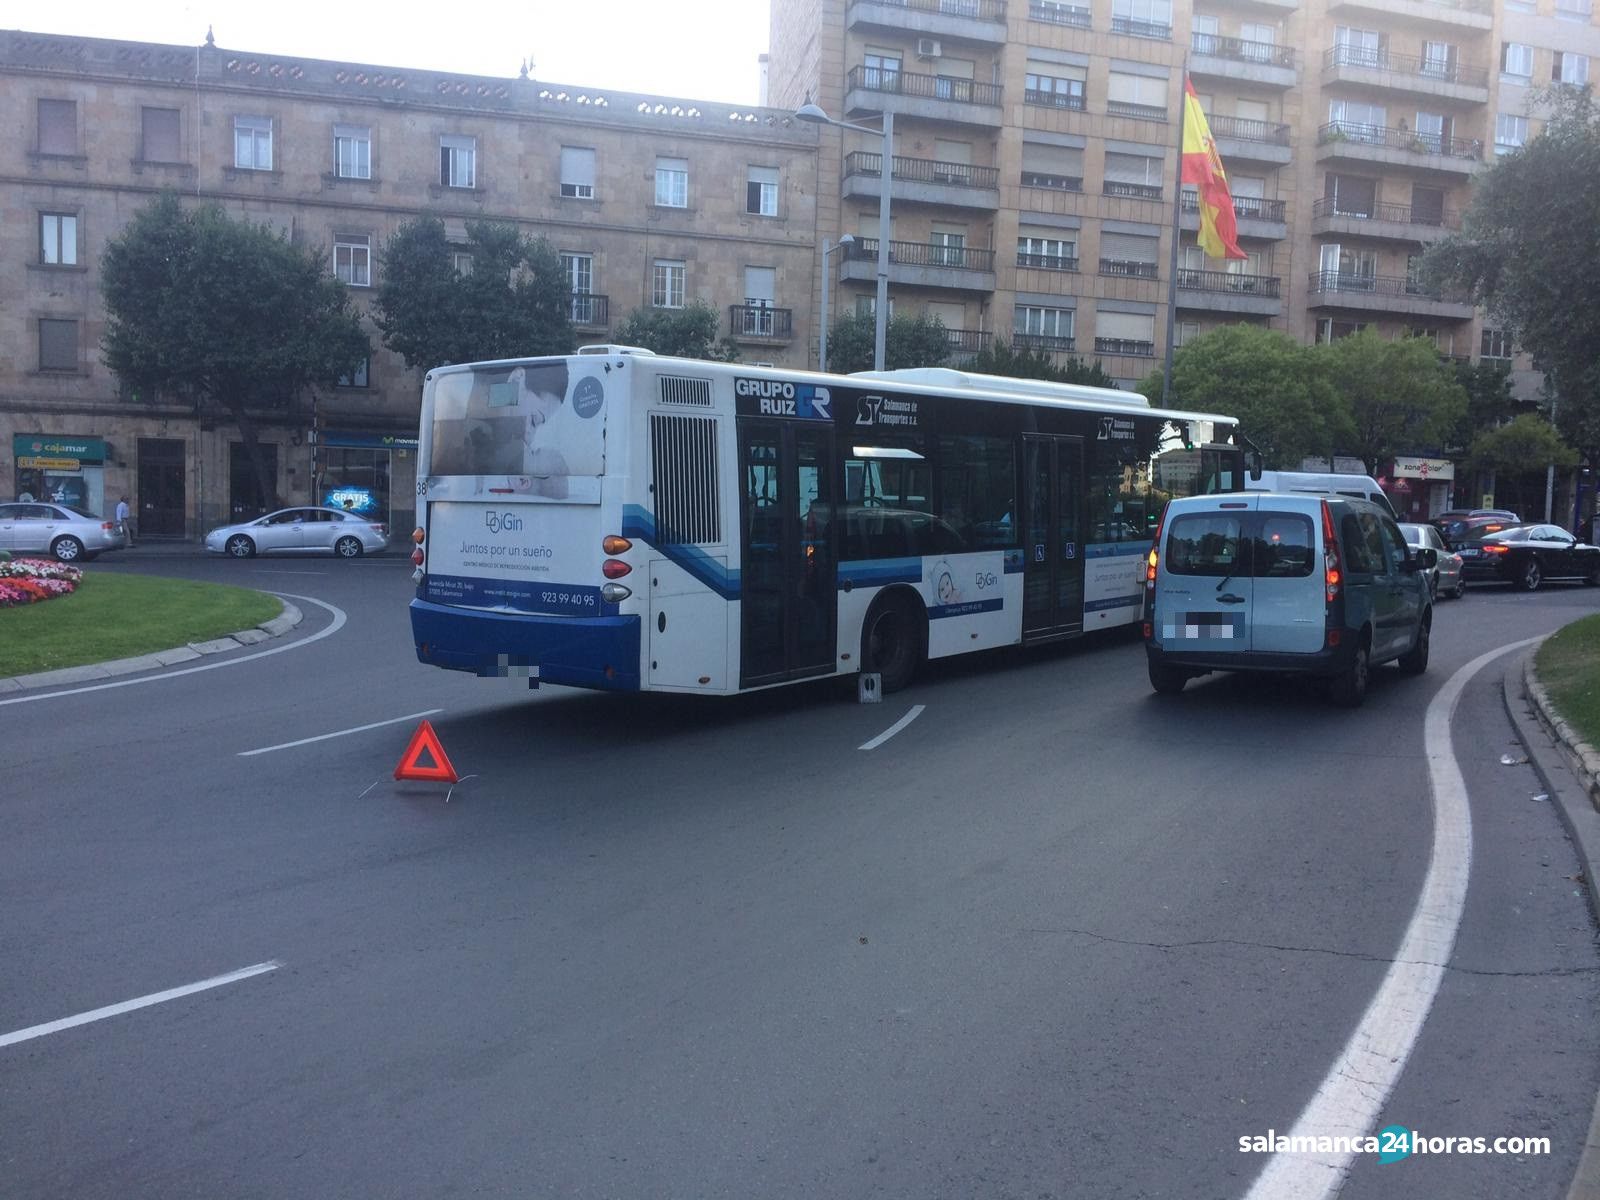  Avería Autobús plaza de España (2) 